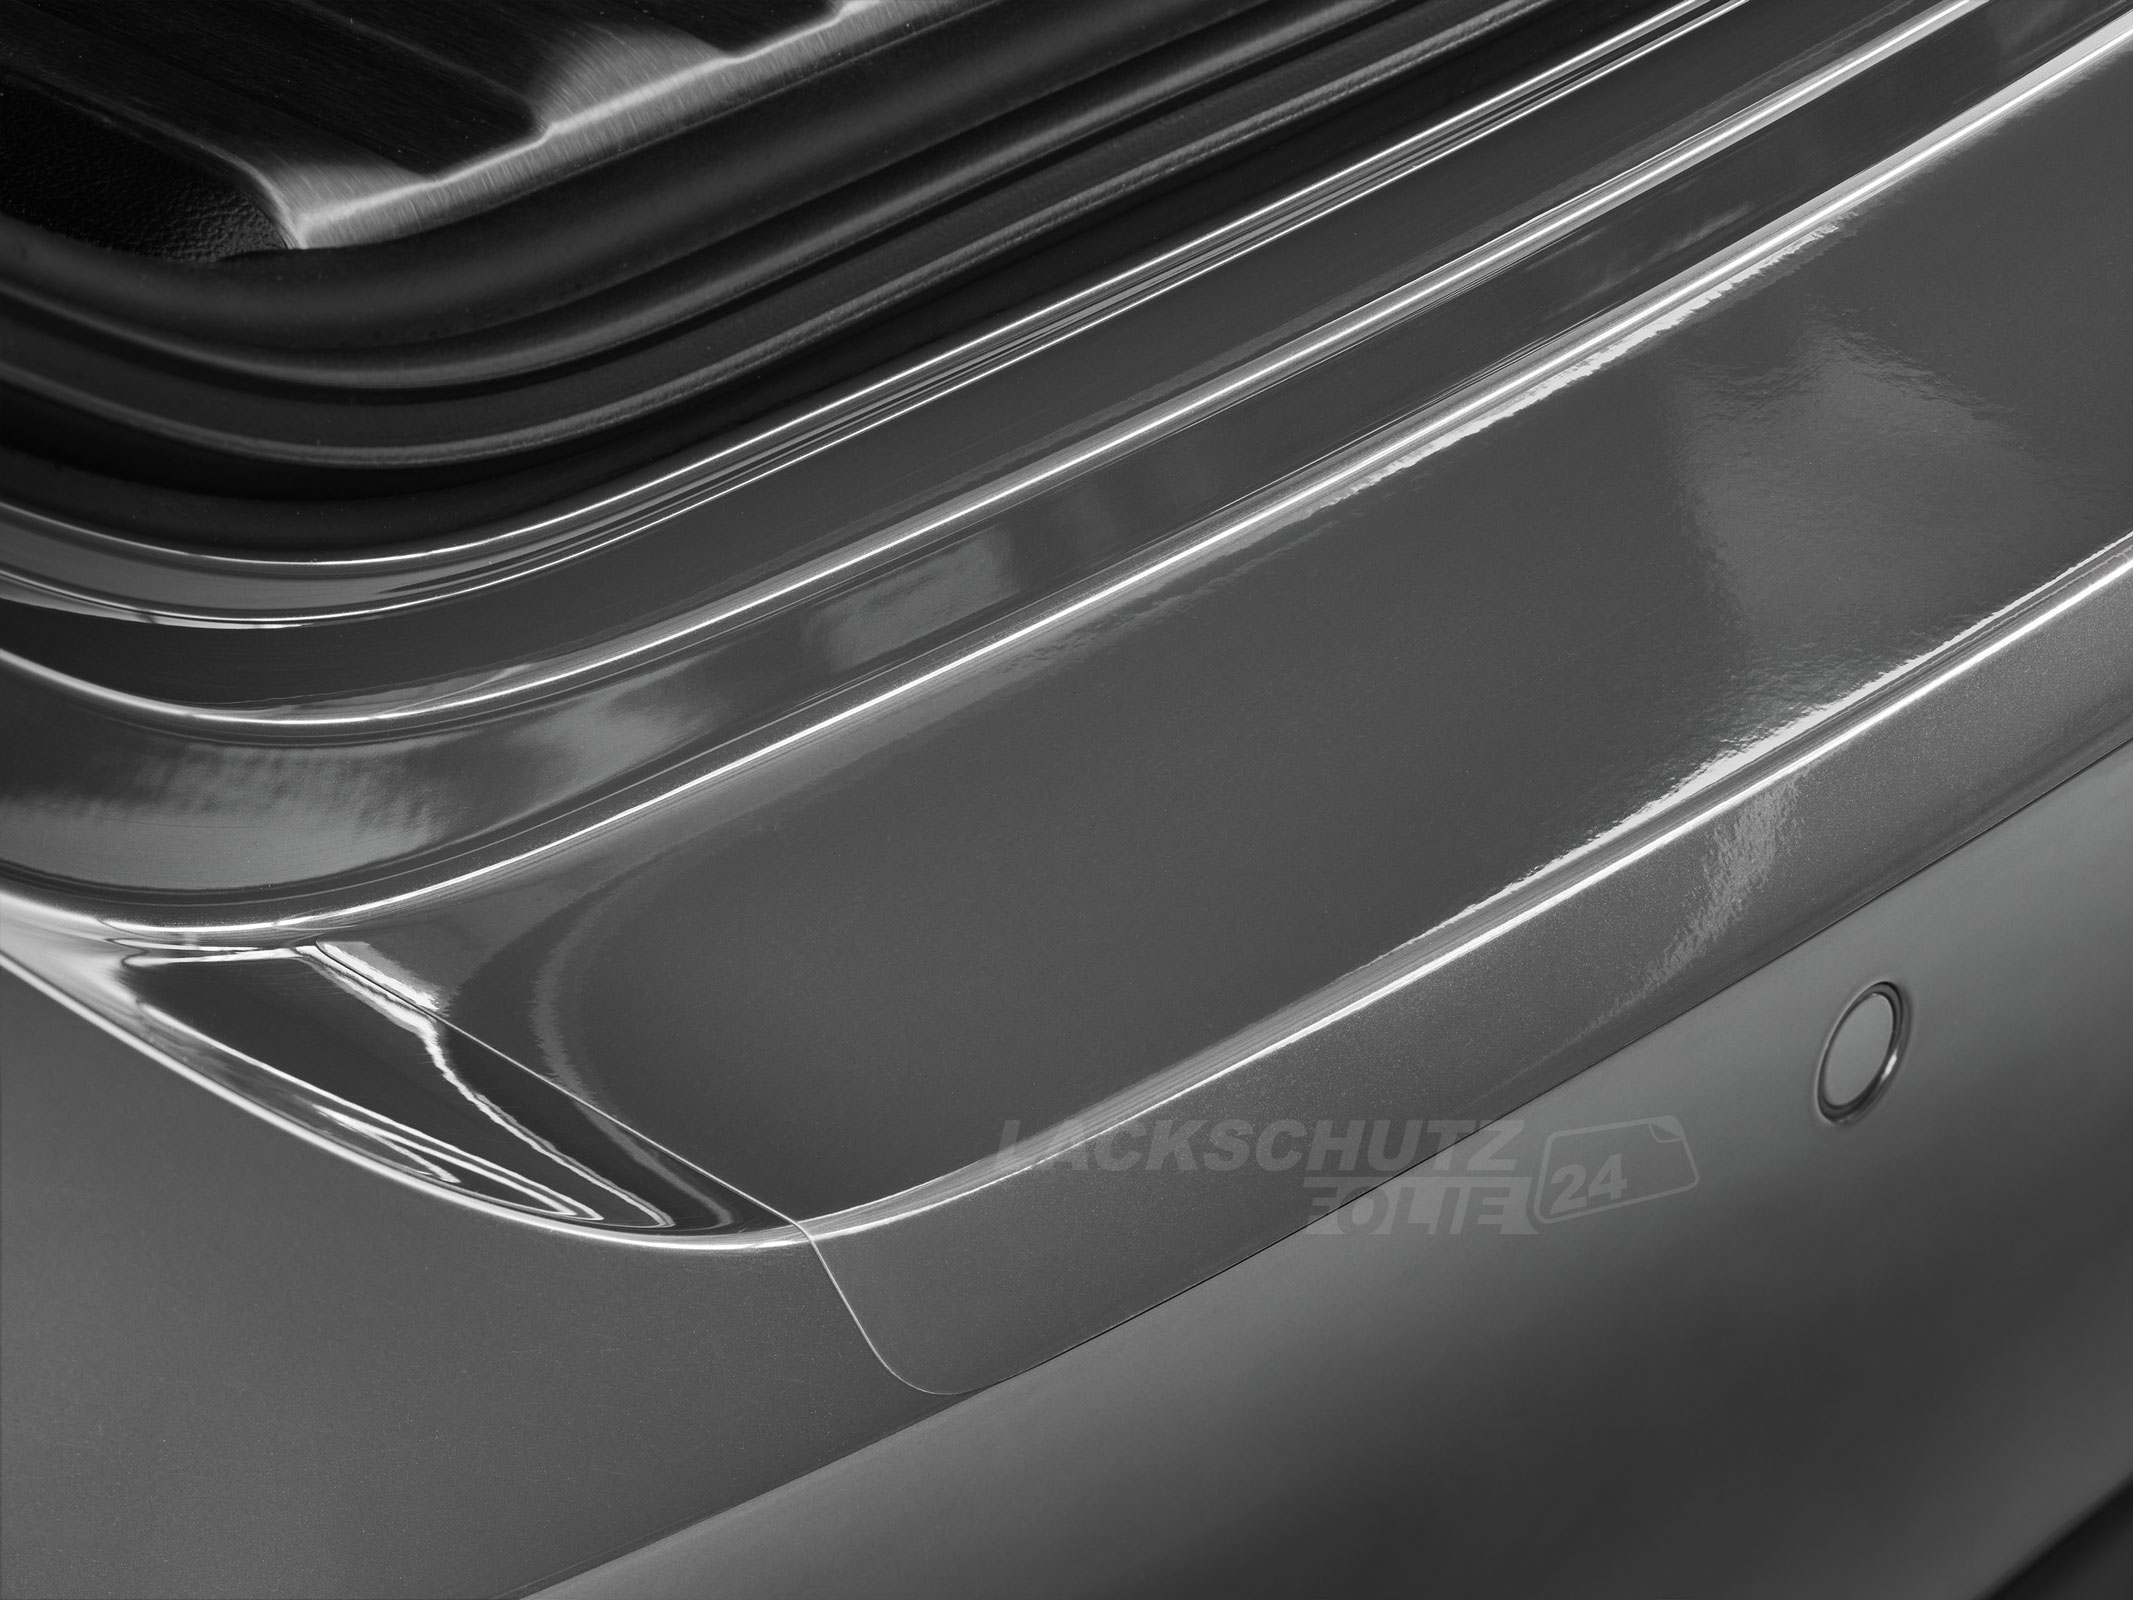 Ladekantenschutzfolie - Transparent Glatt Hochglänzend 150 µm stark für Volvo S60 BJ 2013-11/2018